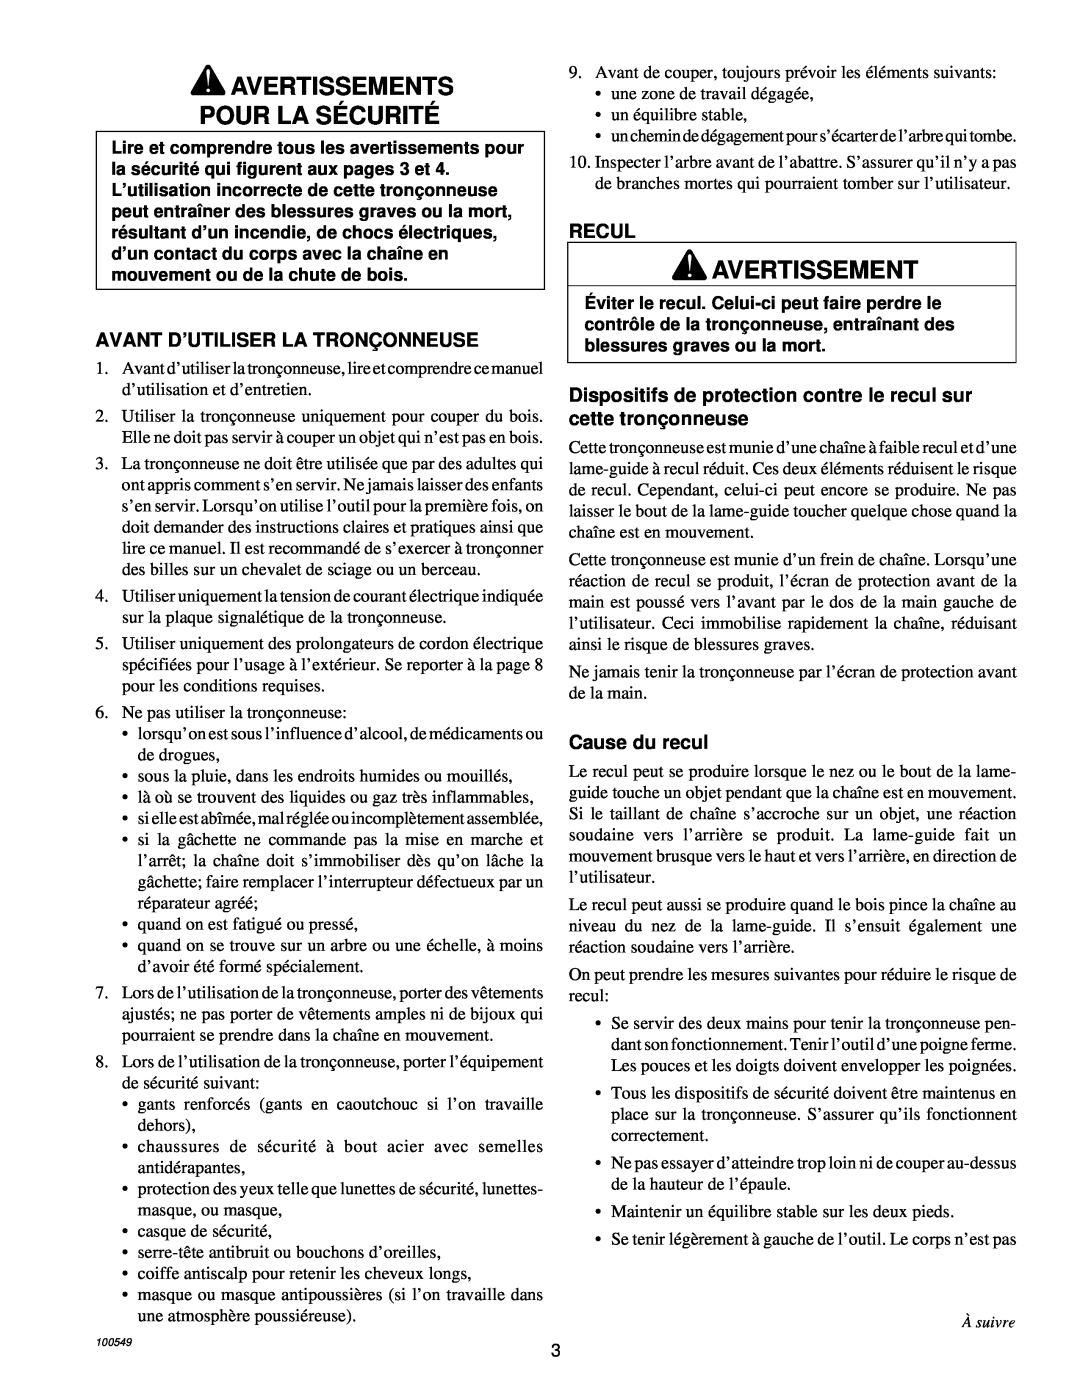 MasterCraft 100524-01, CS-120CB owner manual Avertissements Pour La Sécurité, Avant D’Utiliser La Tronçonneuse, Recul 